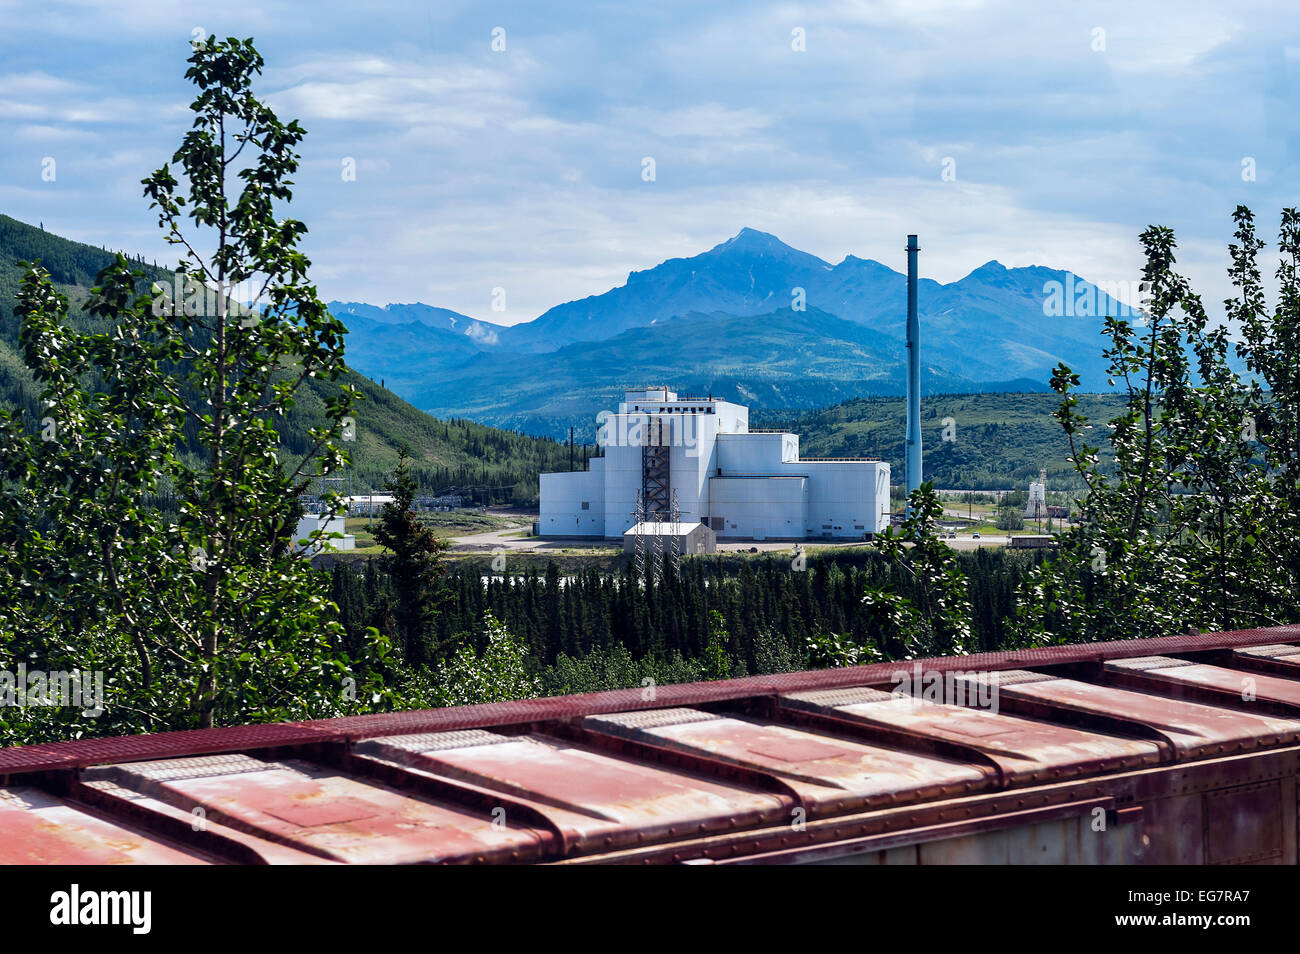 Centrale de charbon dans la région de Healy, Alaska, doté de la technique de combustion de charbon et de contrôle de la pollution, a passé son environnement Banque D'Images